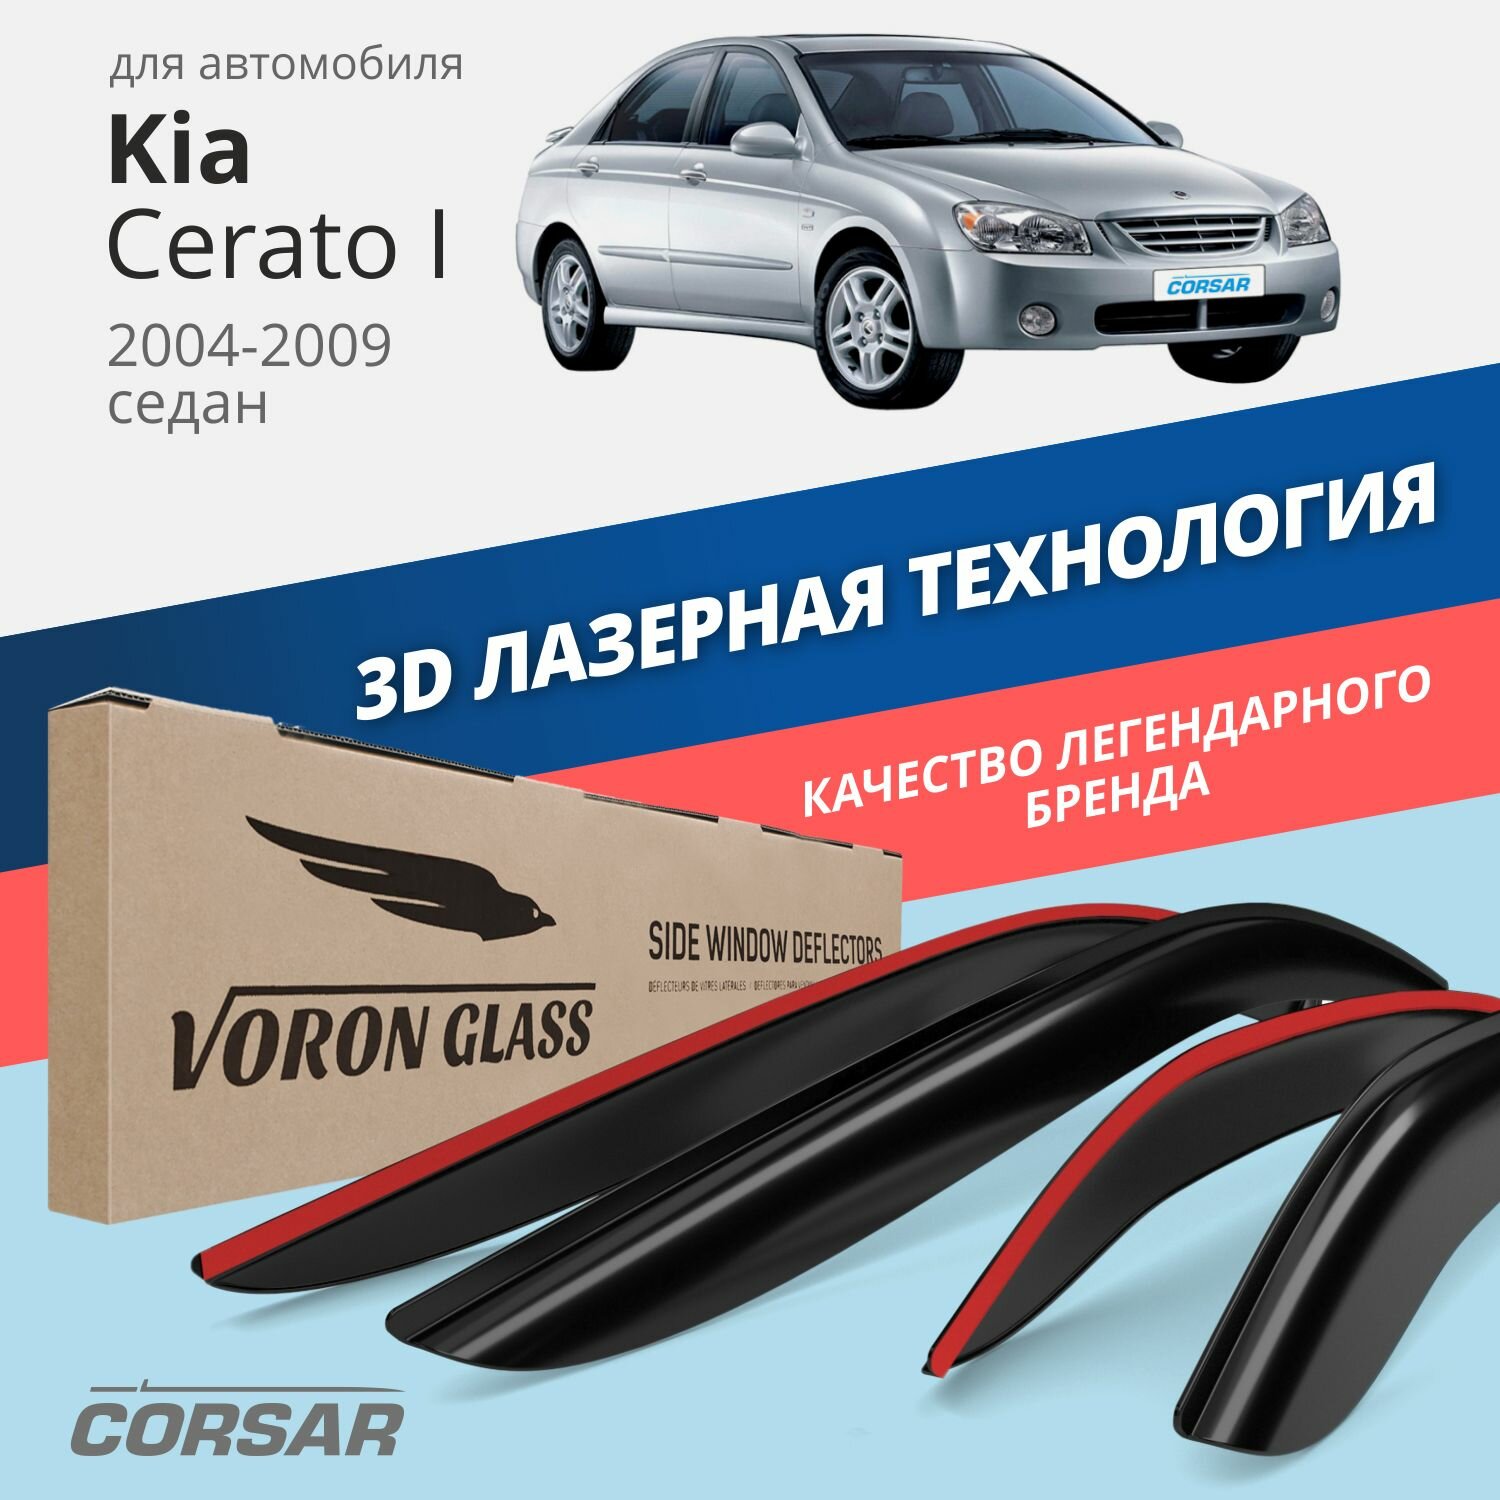 Дефлекторы окон Voron Glass серия Corsar для Kia Cerato I 2004-2009 накладные 4 шт.